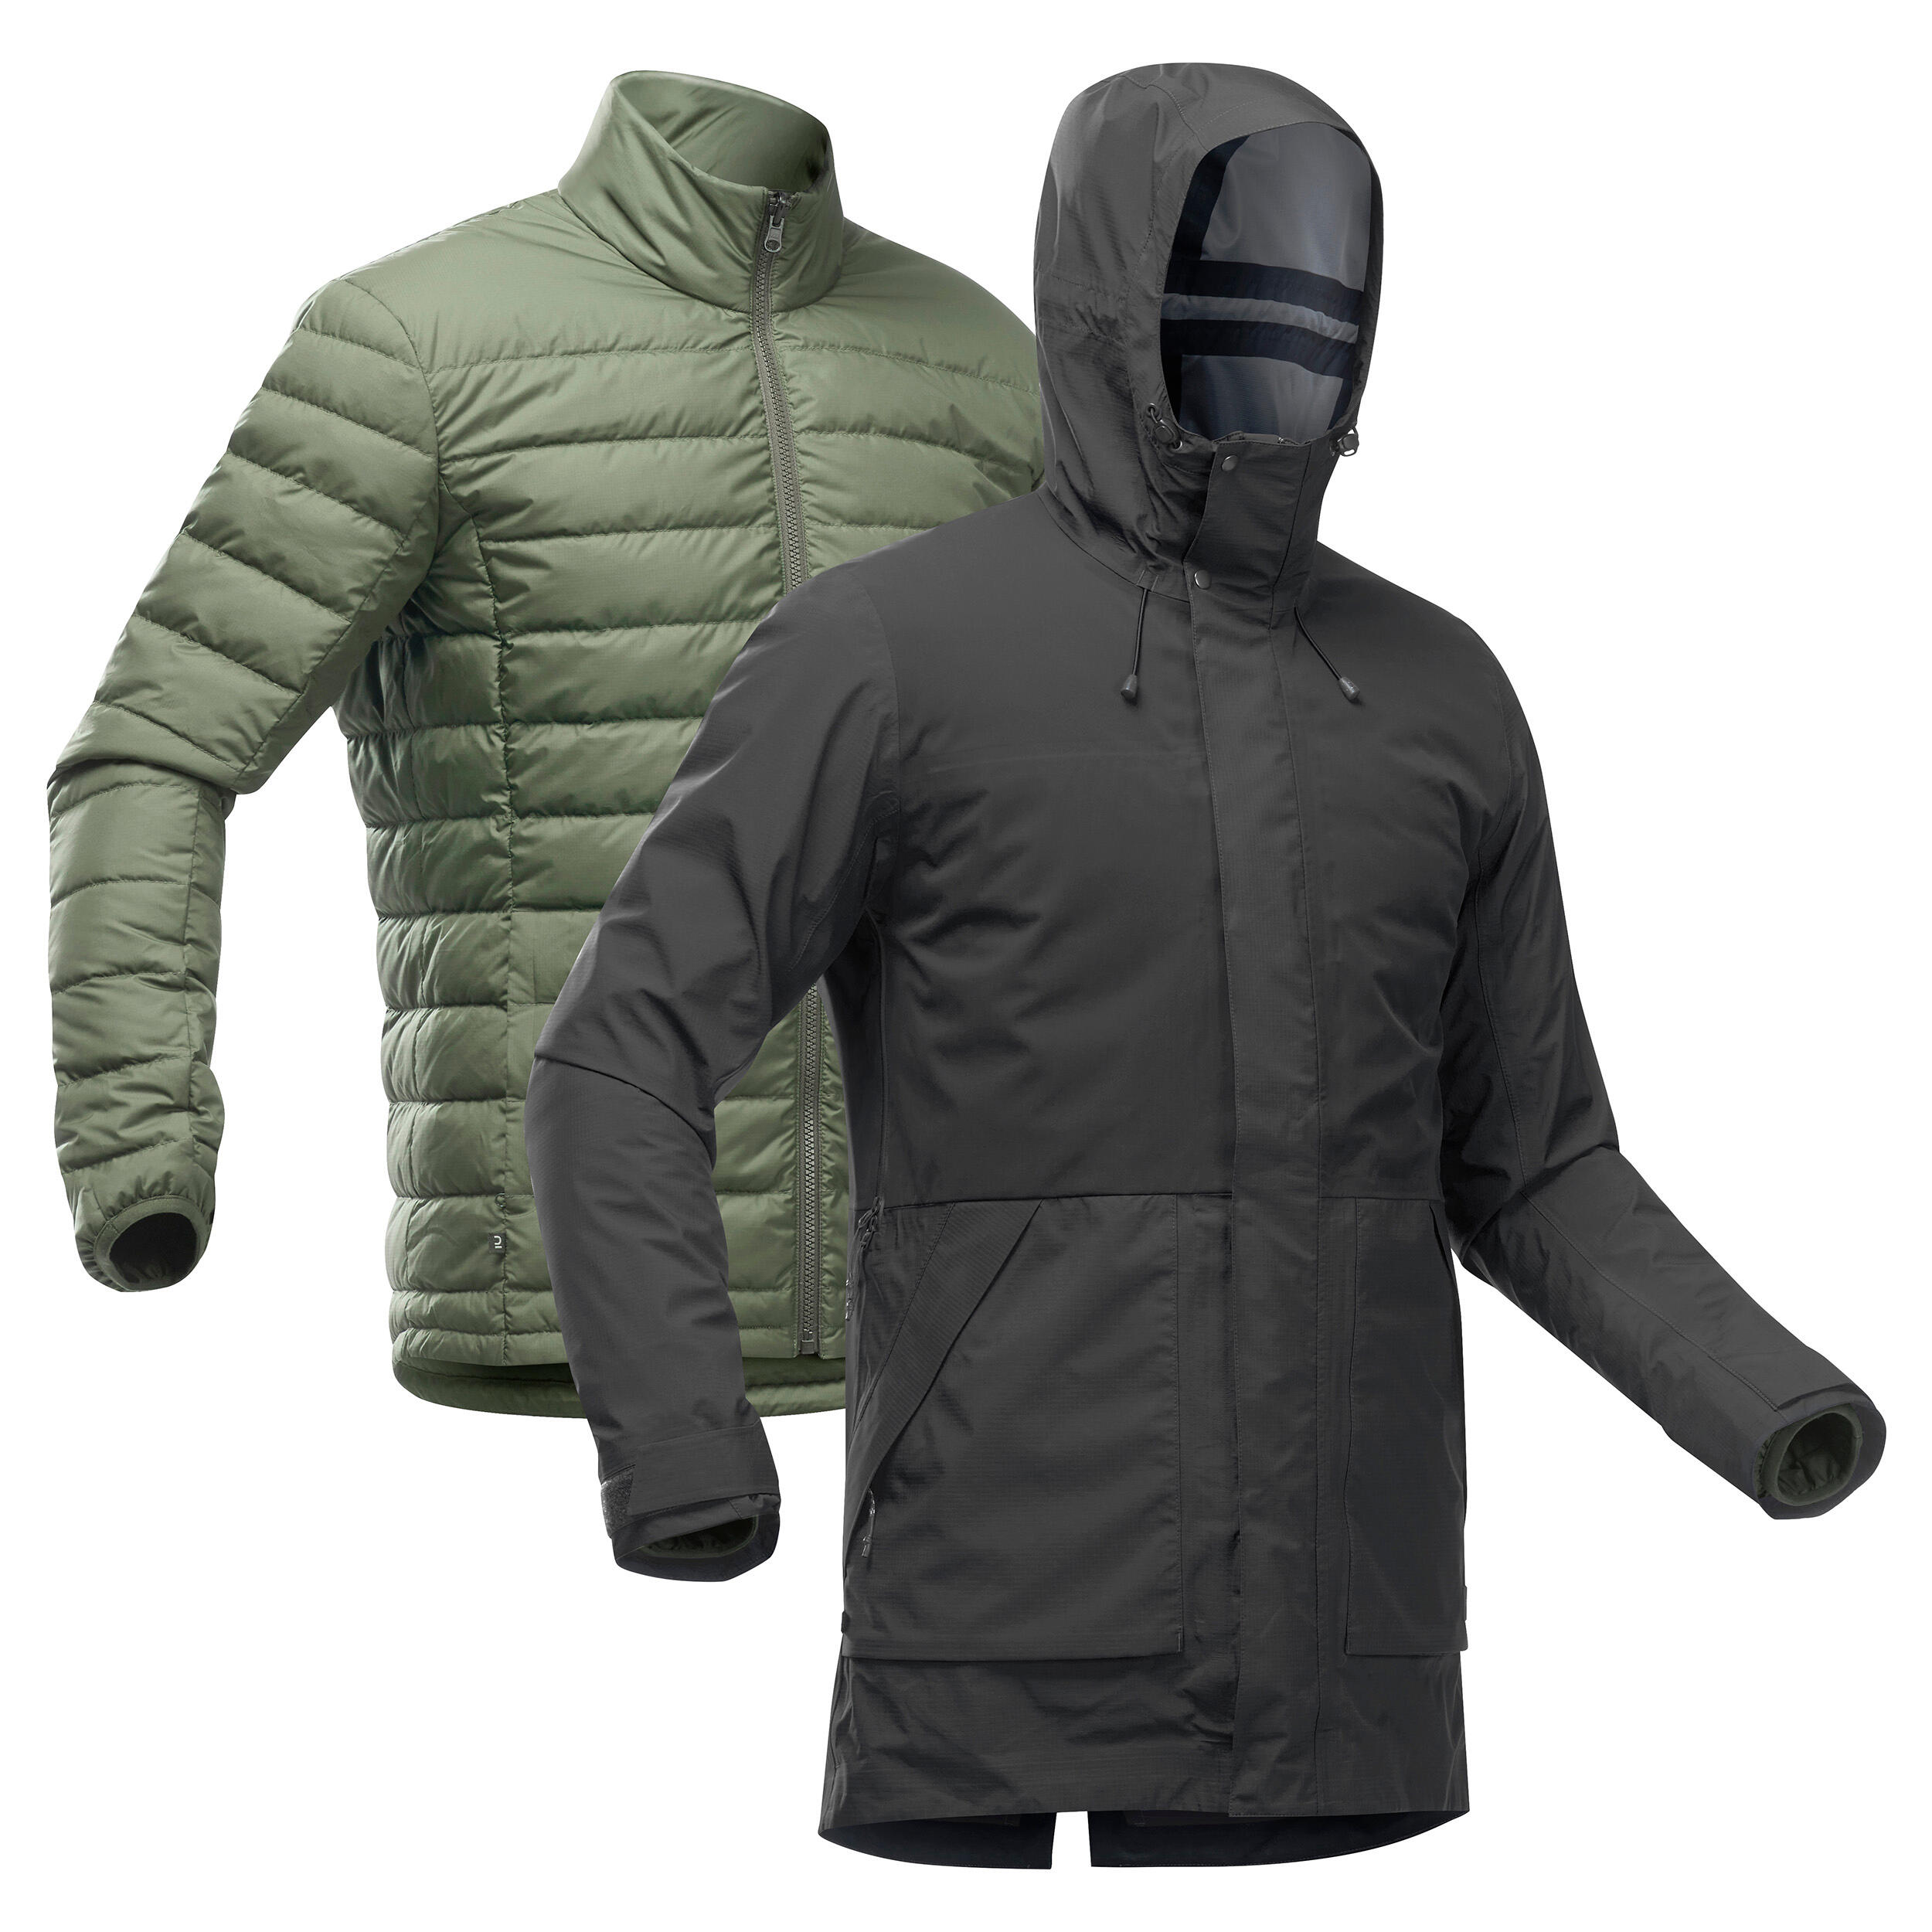 Men’s 3-in-1 Waterproof Travel Trekking Jacket Travel 900 Compact -10°C - Black  2/18